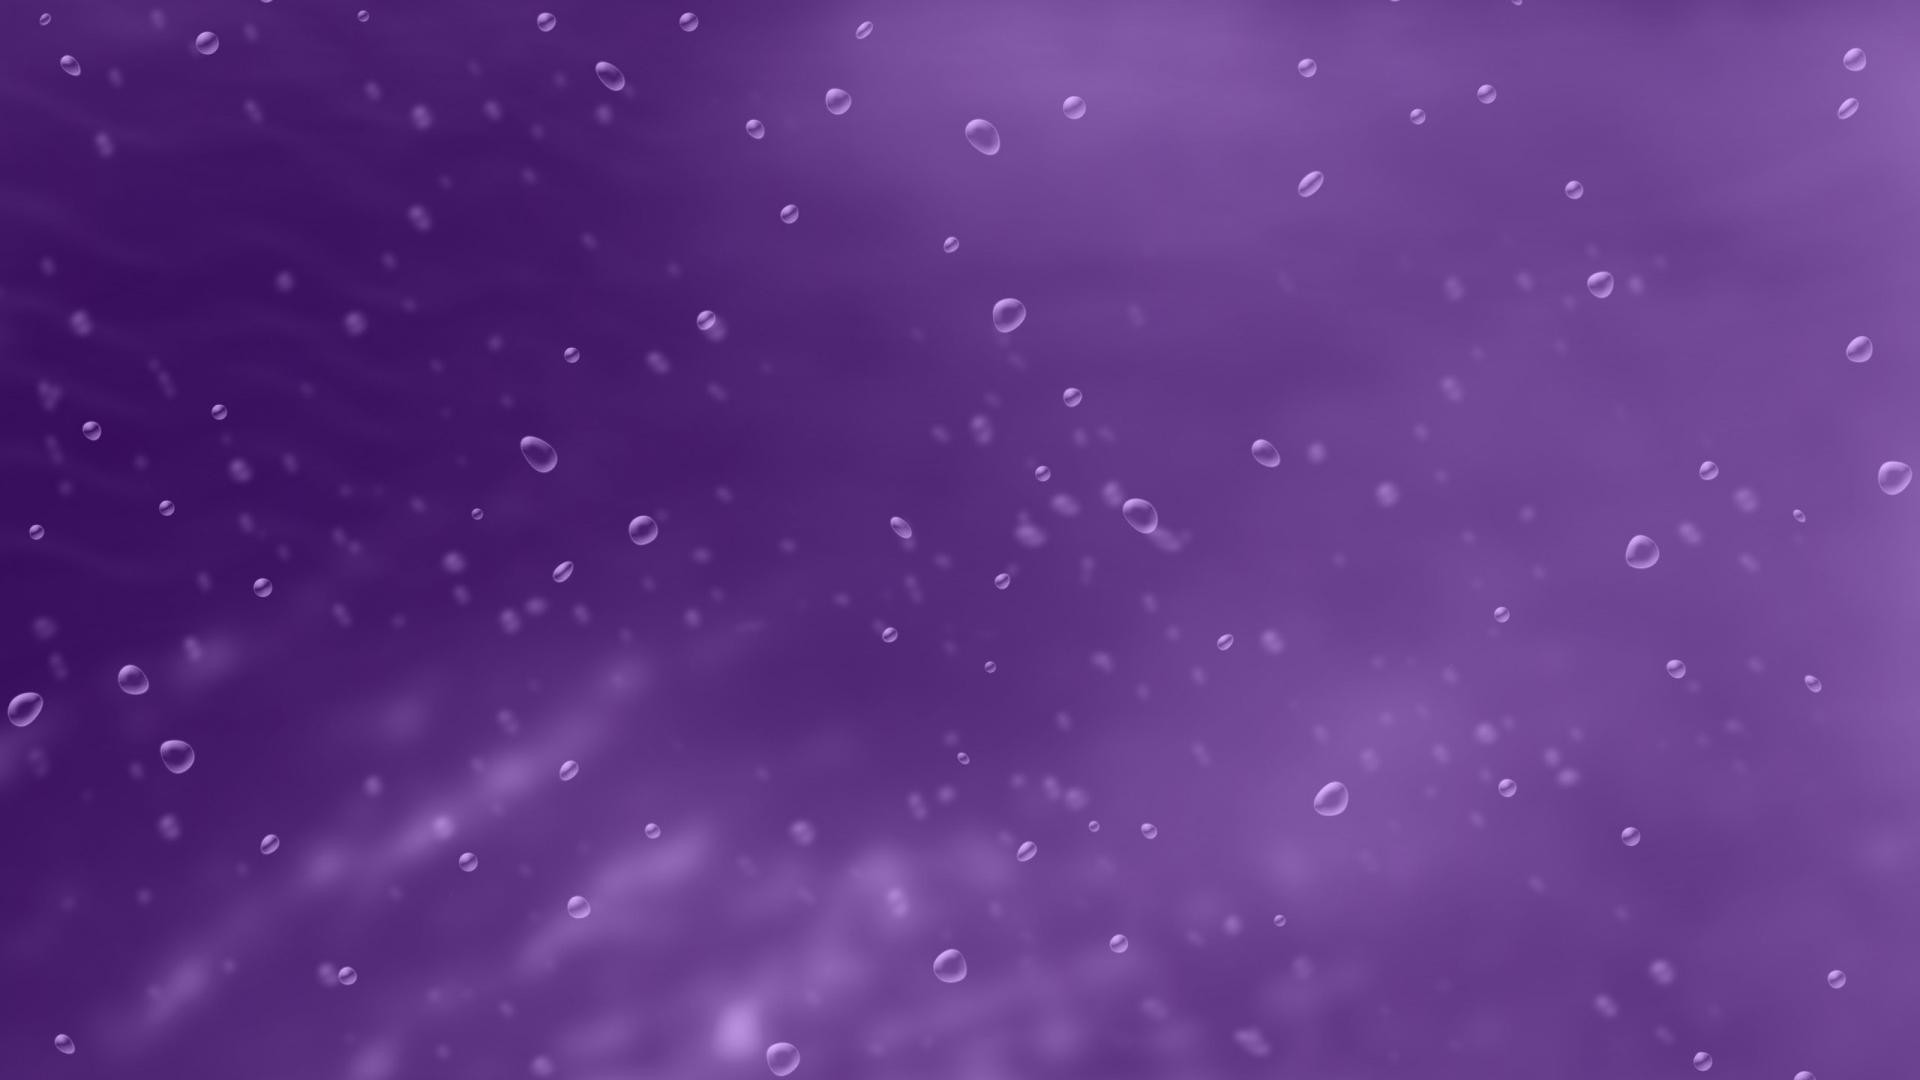 1920x1080  Dark purple bubble for desktop wide wallpapers:1280x800,1440x900,1680x1050  - hd